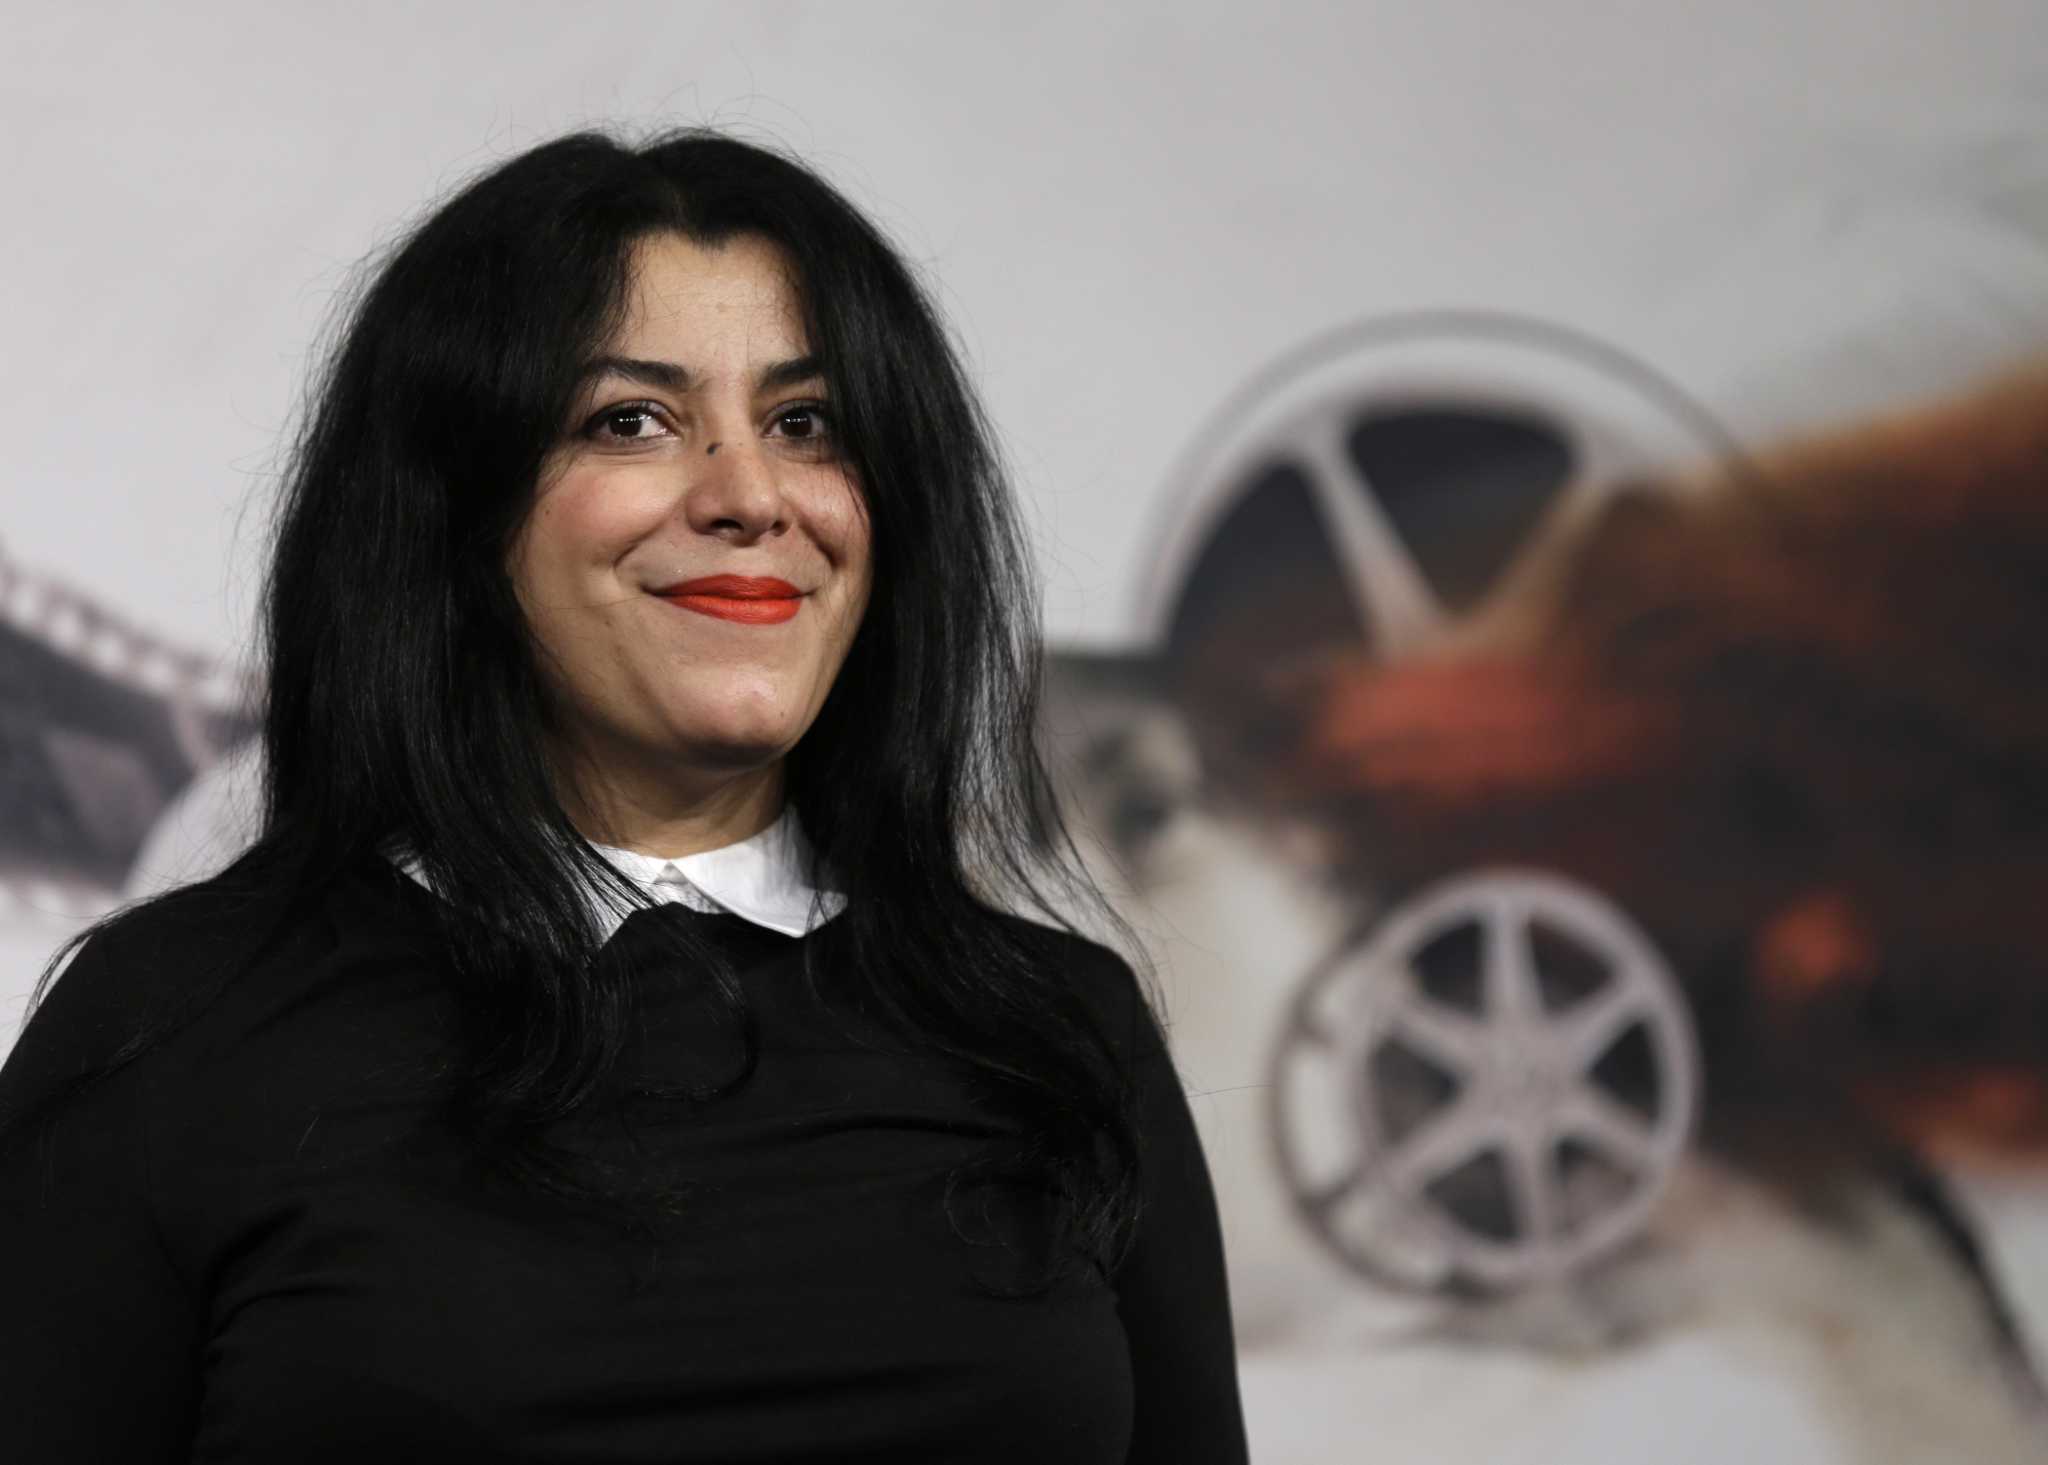 L'artiste franco-iranienne Marjane Satrapi remporte le Prix espagnol des Asturies pour la communication